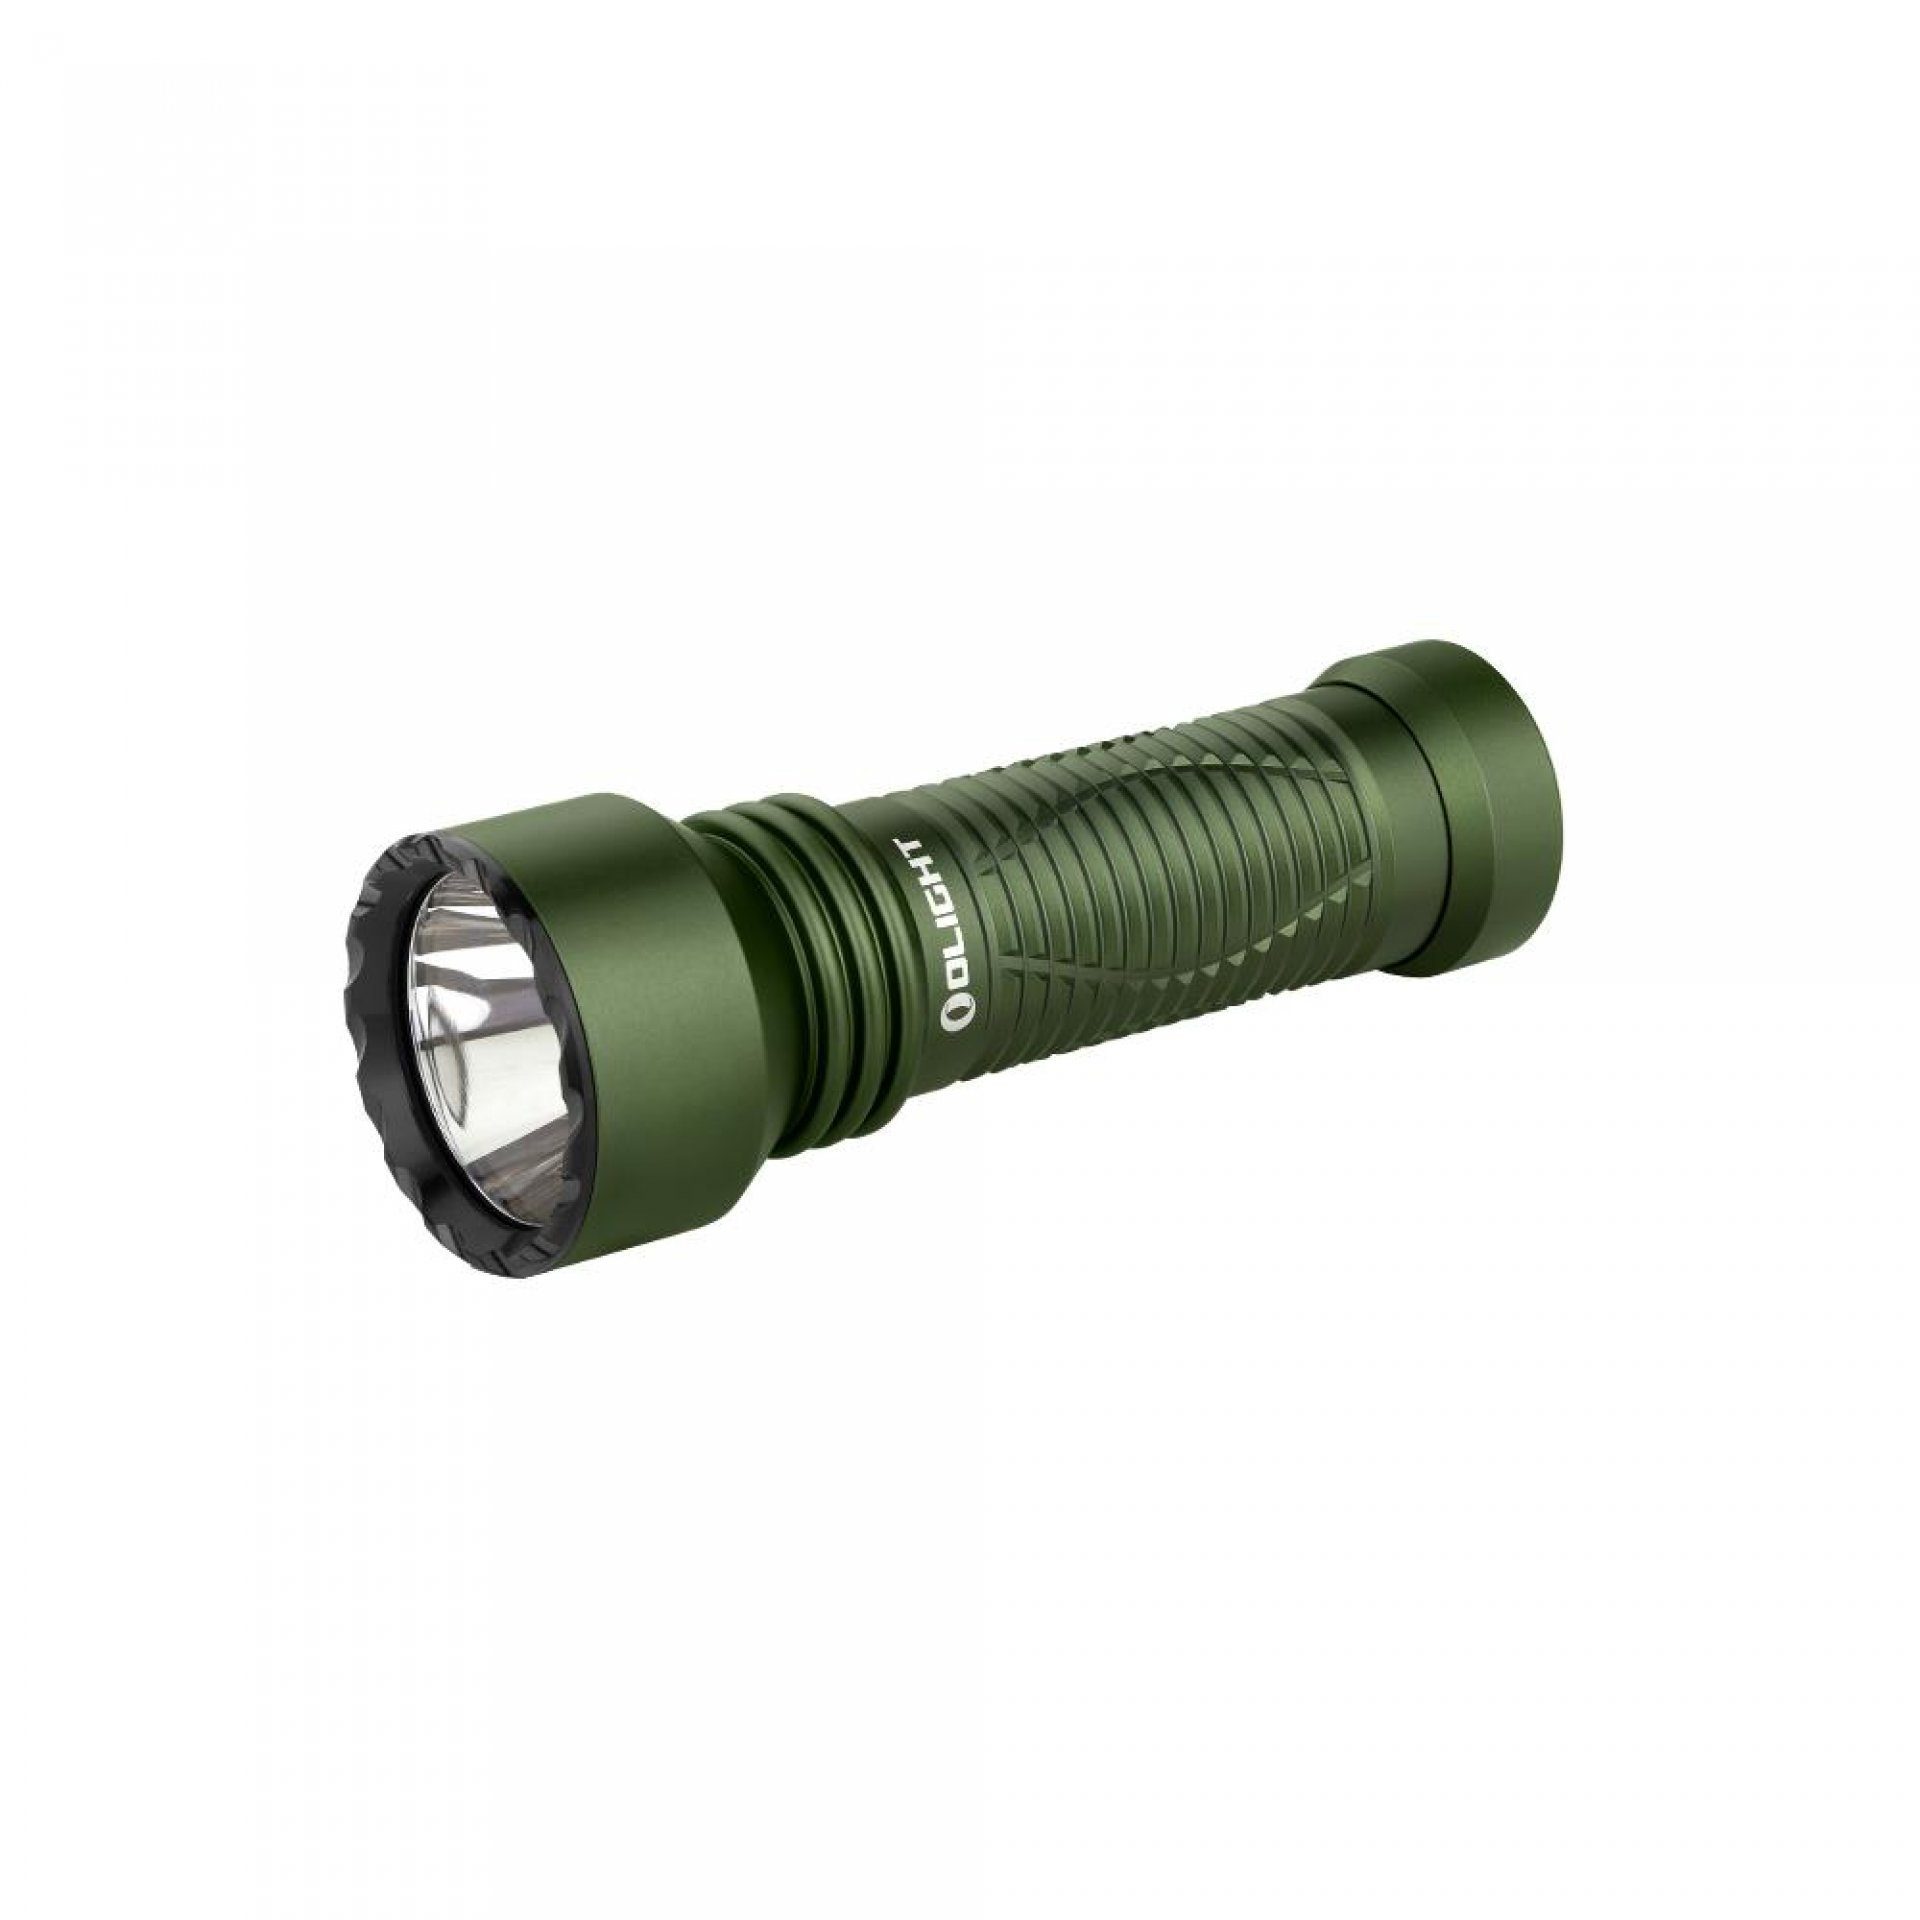 OLIGHT LED Taschenlampe Javelot Mini LED taktische Taschenlampe mit einer runden Lichtquelle, wiederaufbare IPX8 zoombare Handlampe für Notfall, Patrouille, Camping OD Grün